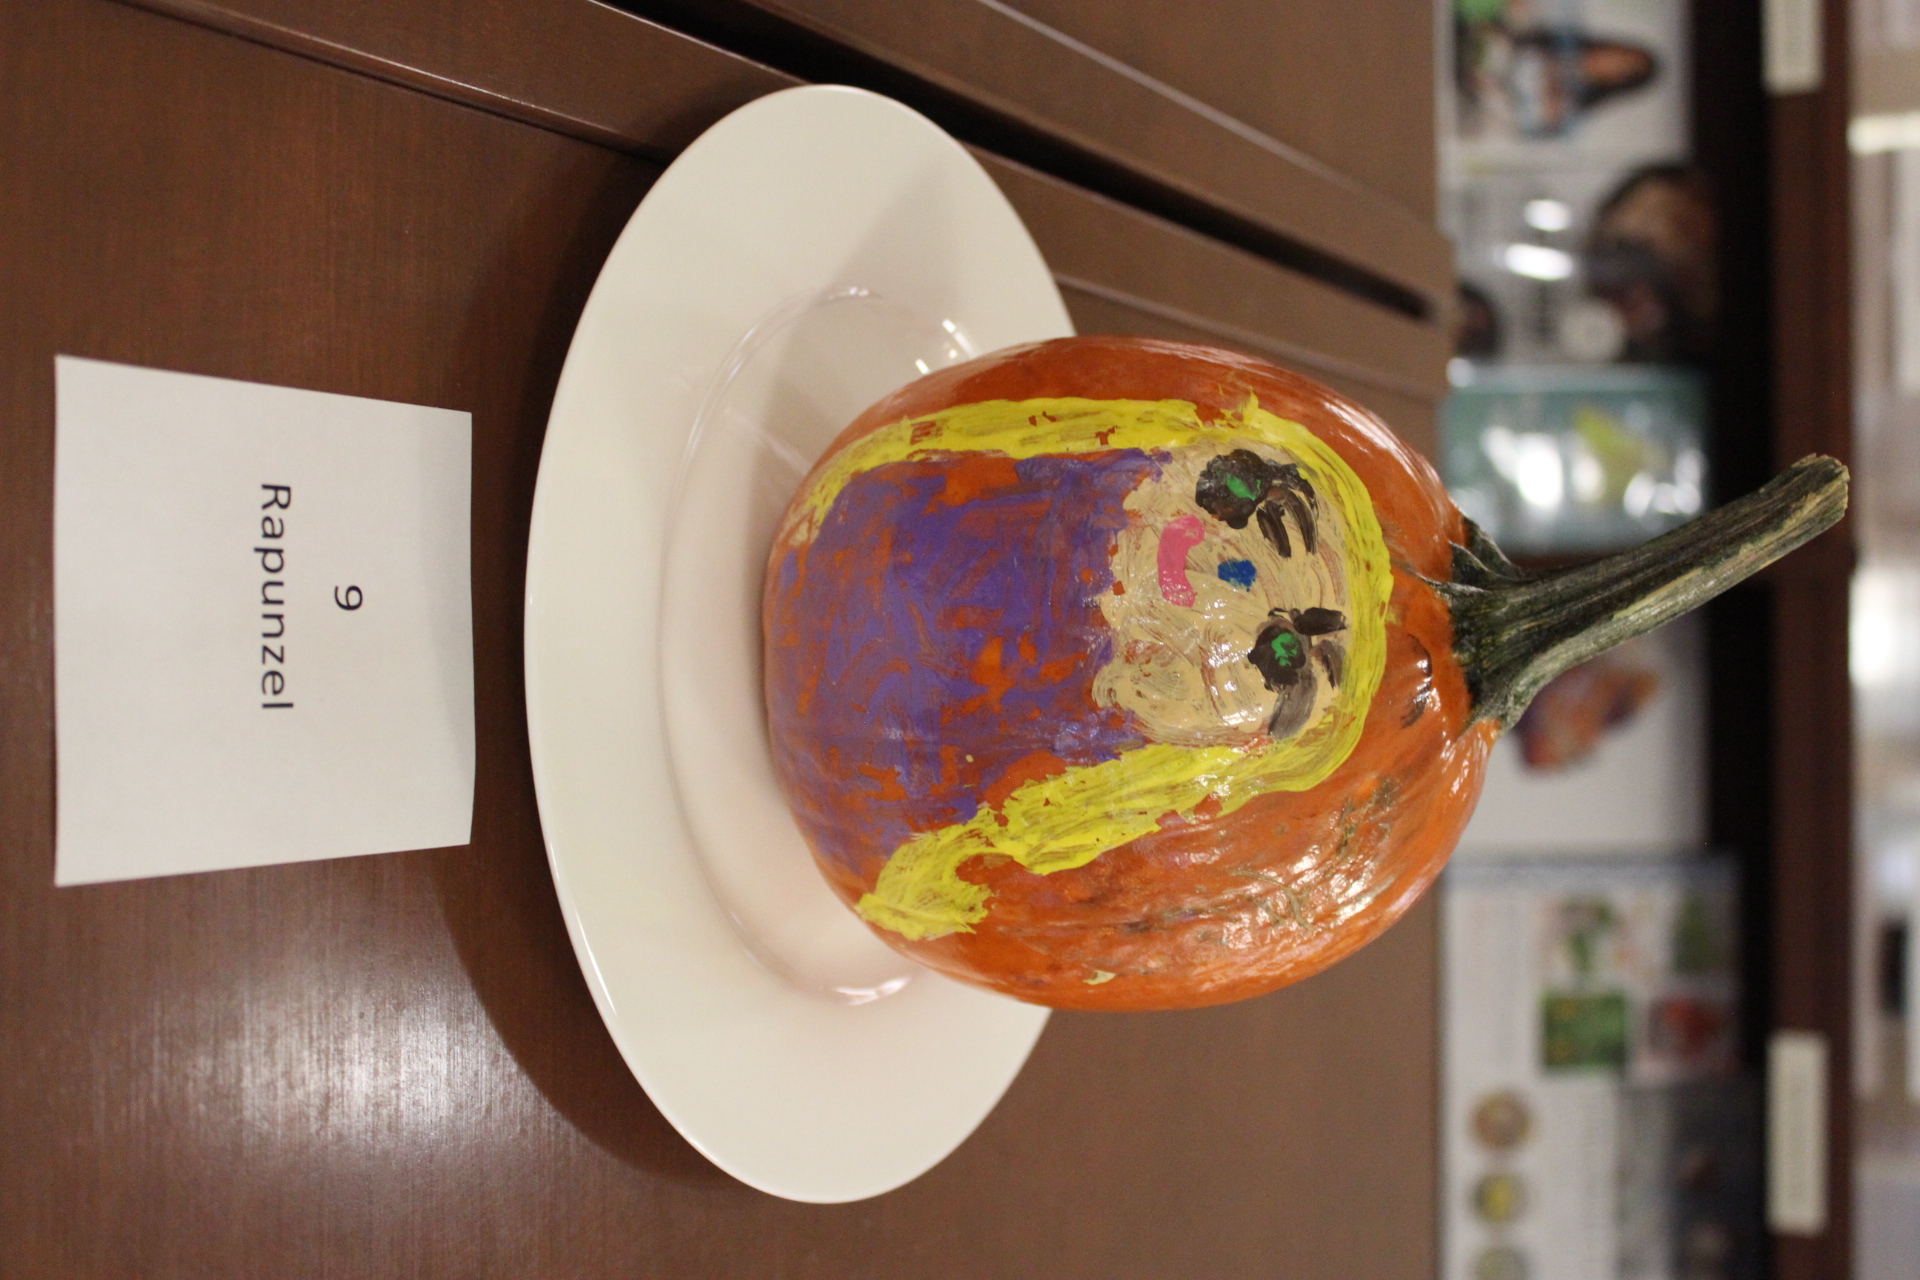 Pumpkin decorated as "Rapunzel"